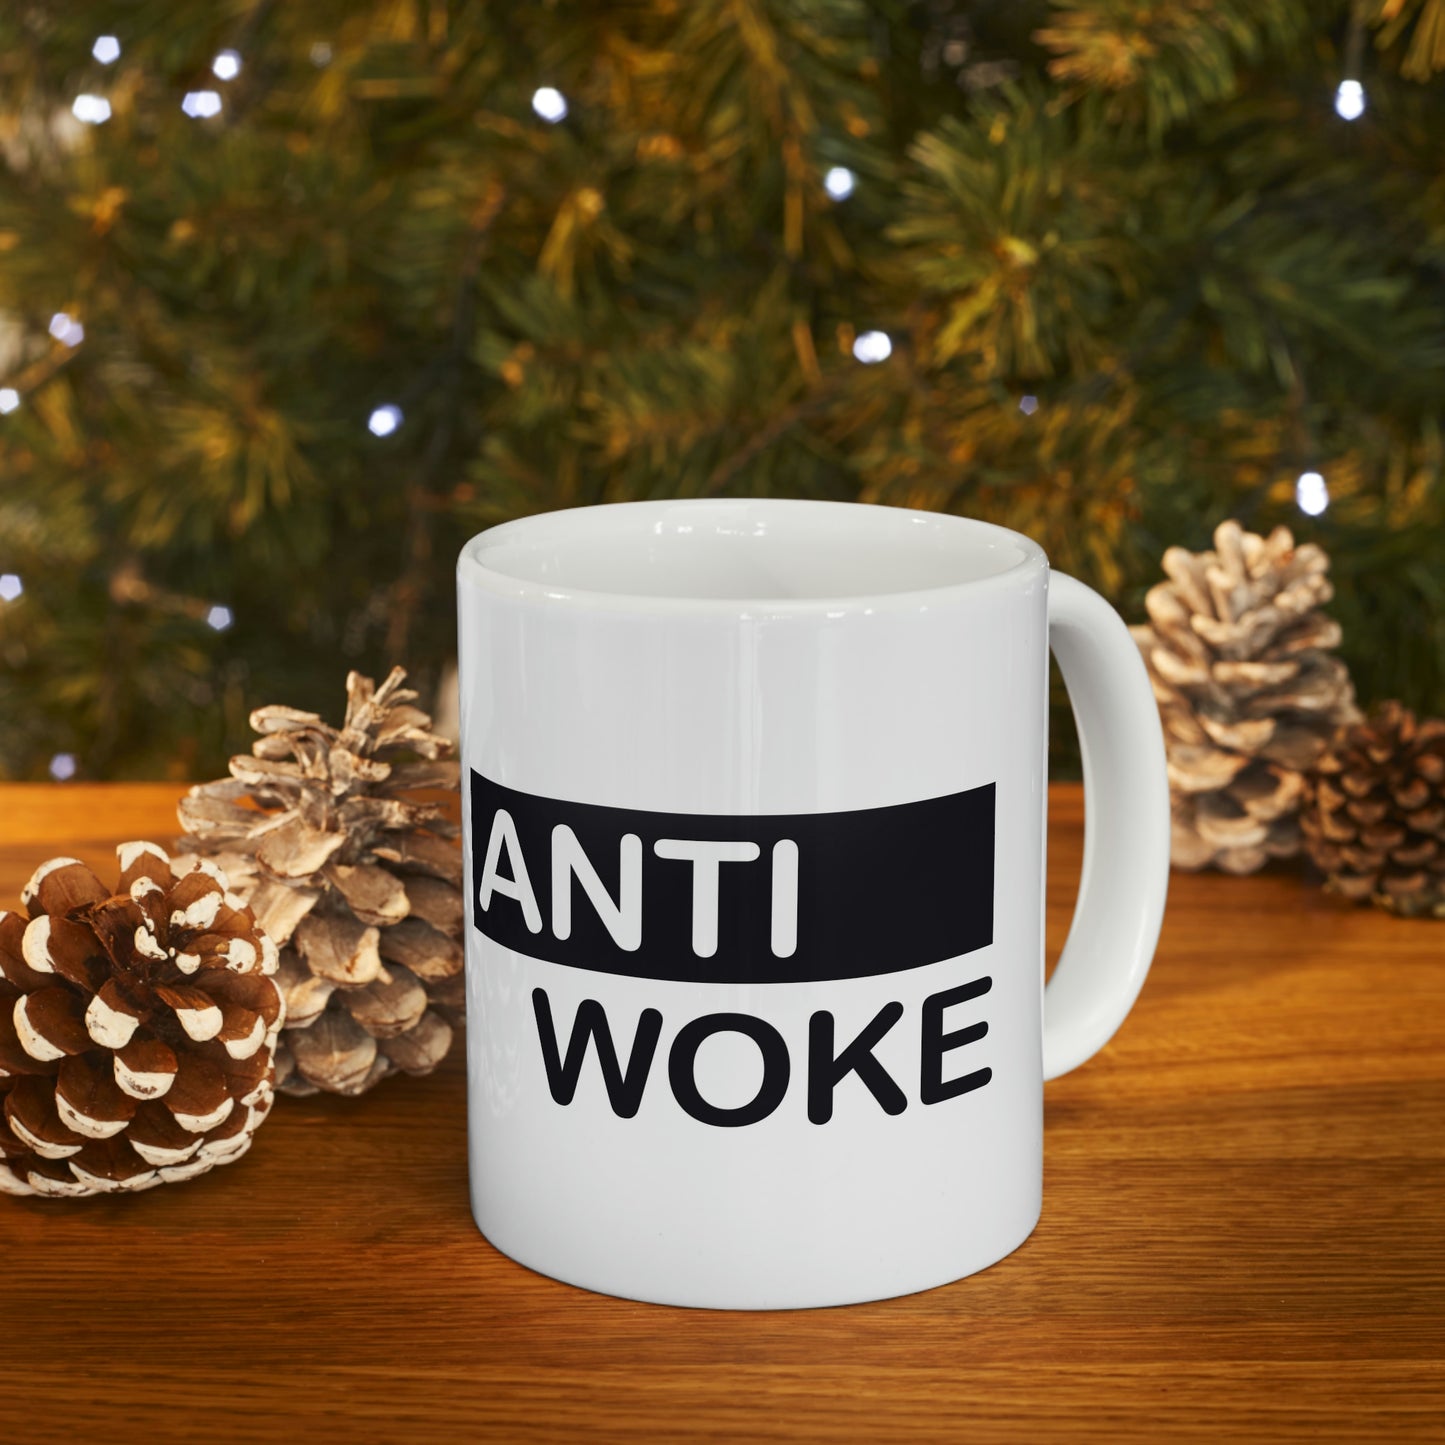 'Anti Woke' Ceramic Mug 11oz